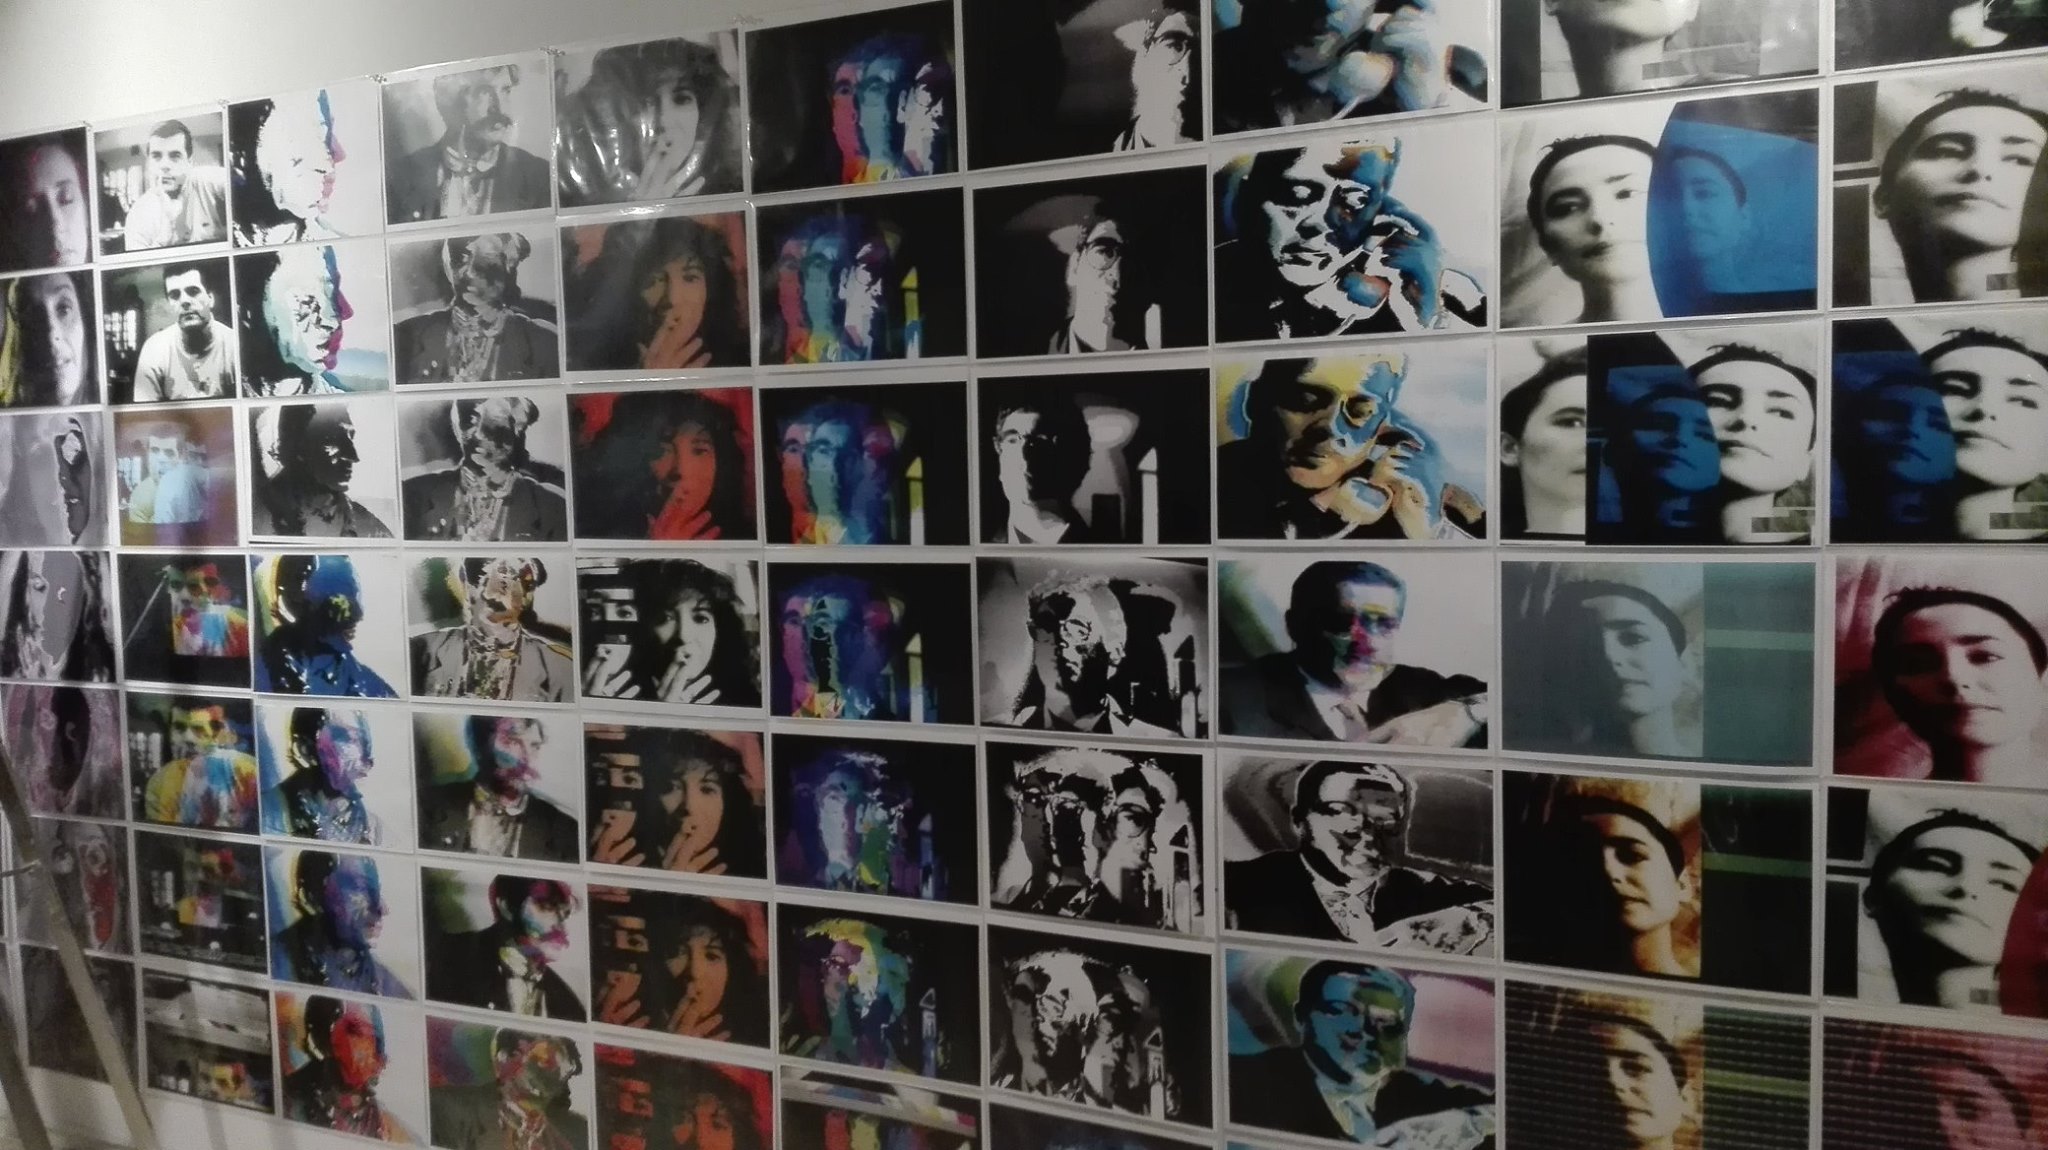 Archivo Retratos Lumena 1992-1995. Fotovídeo computer. Fotografías capturadas de la pantalla y transferidas a fotocopias a color. 161 unidades de secuencias modulares. Medidas Variables. (detalle)